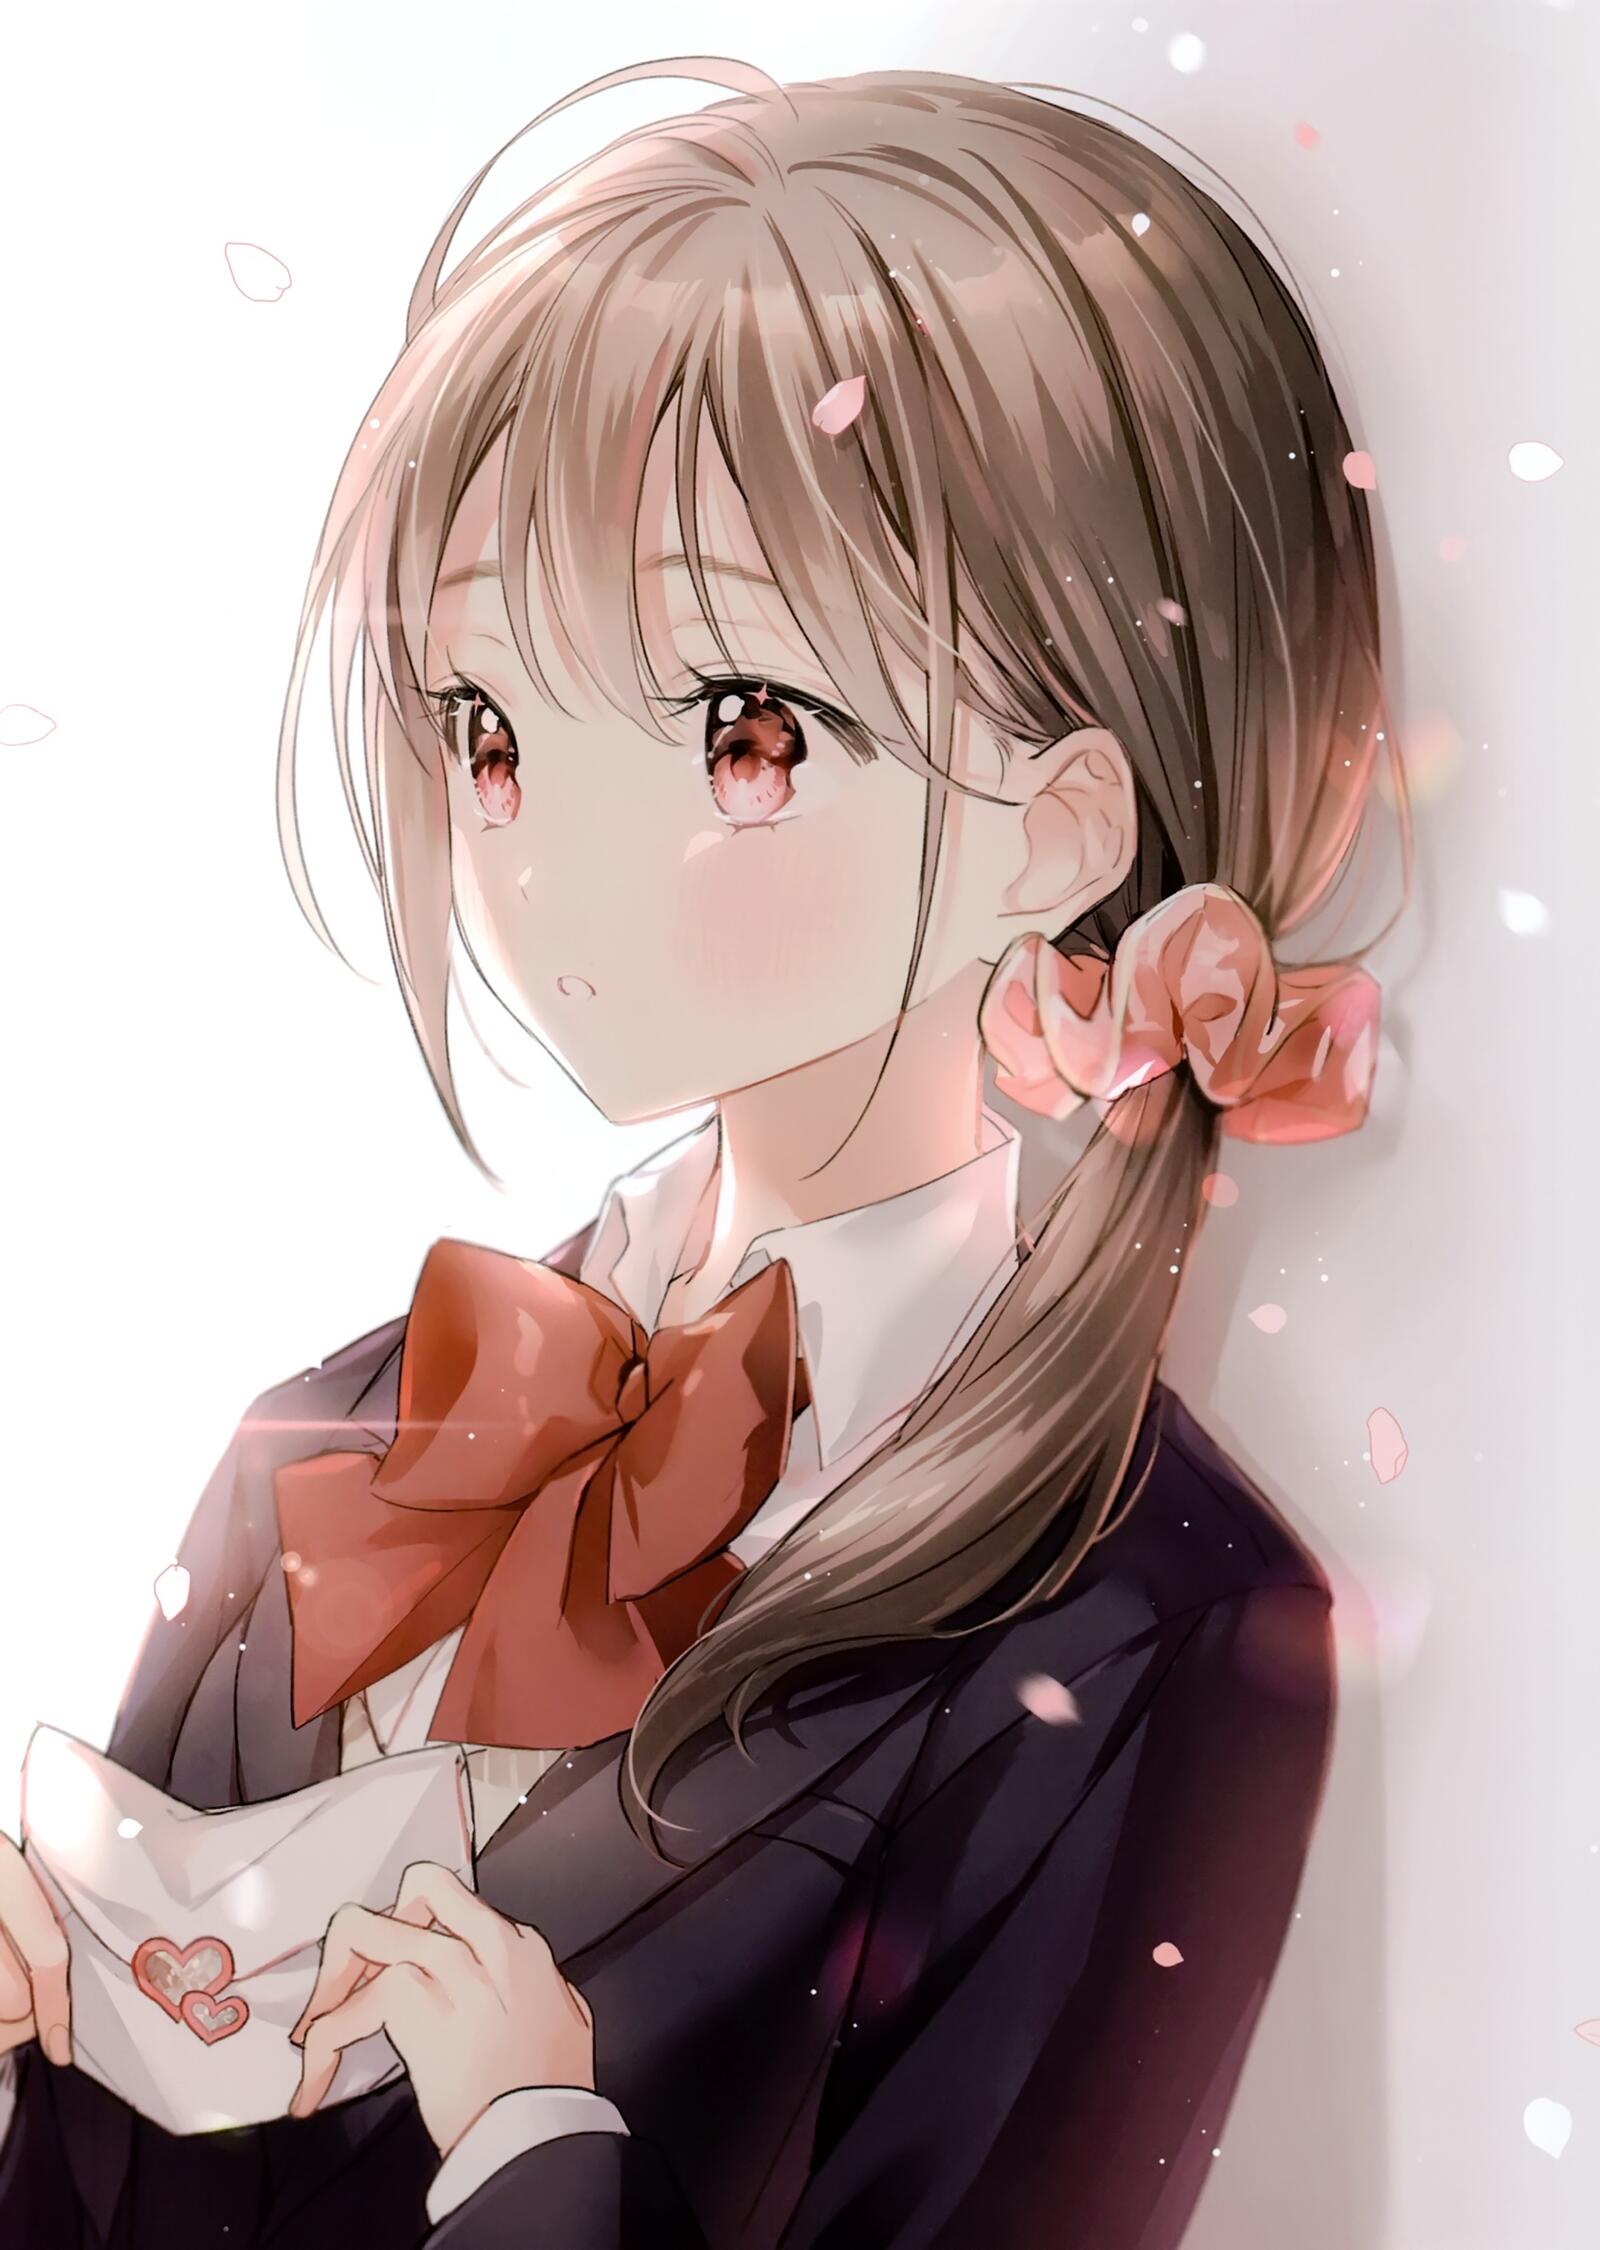 Wallpapers wallpaper anime school girl ribbon love letter on the desktop